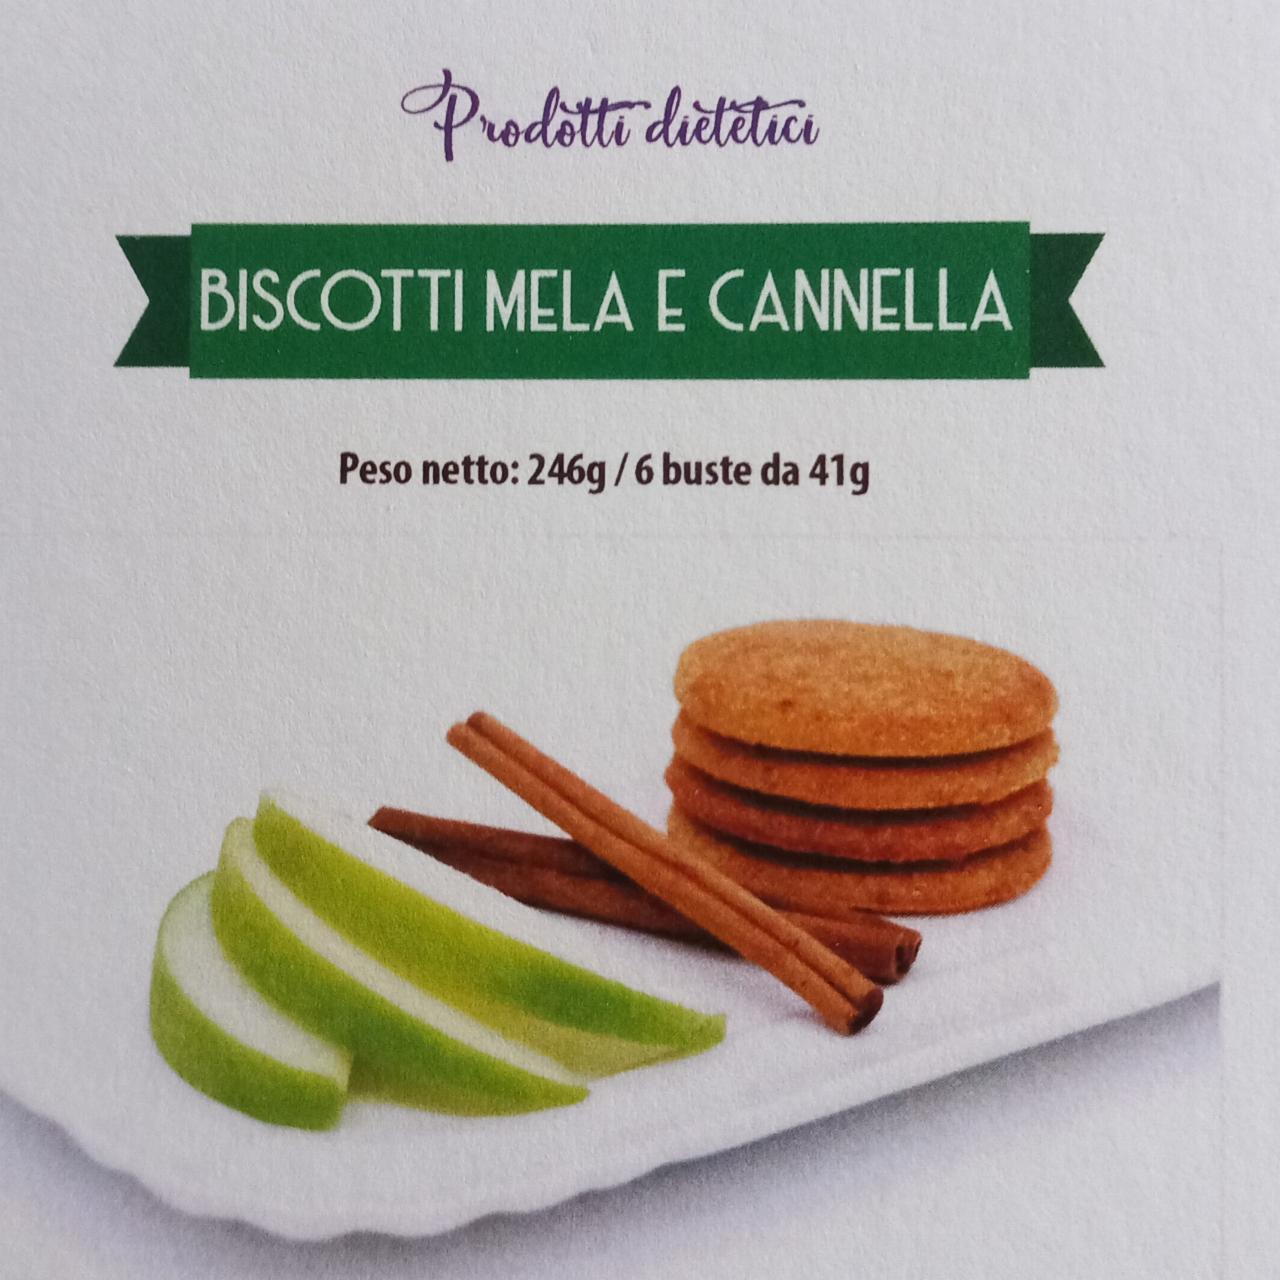 Fotografie - Biscotti mela e cannella Prodotti dietetici